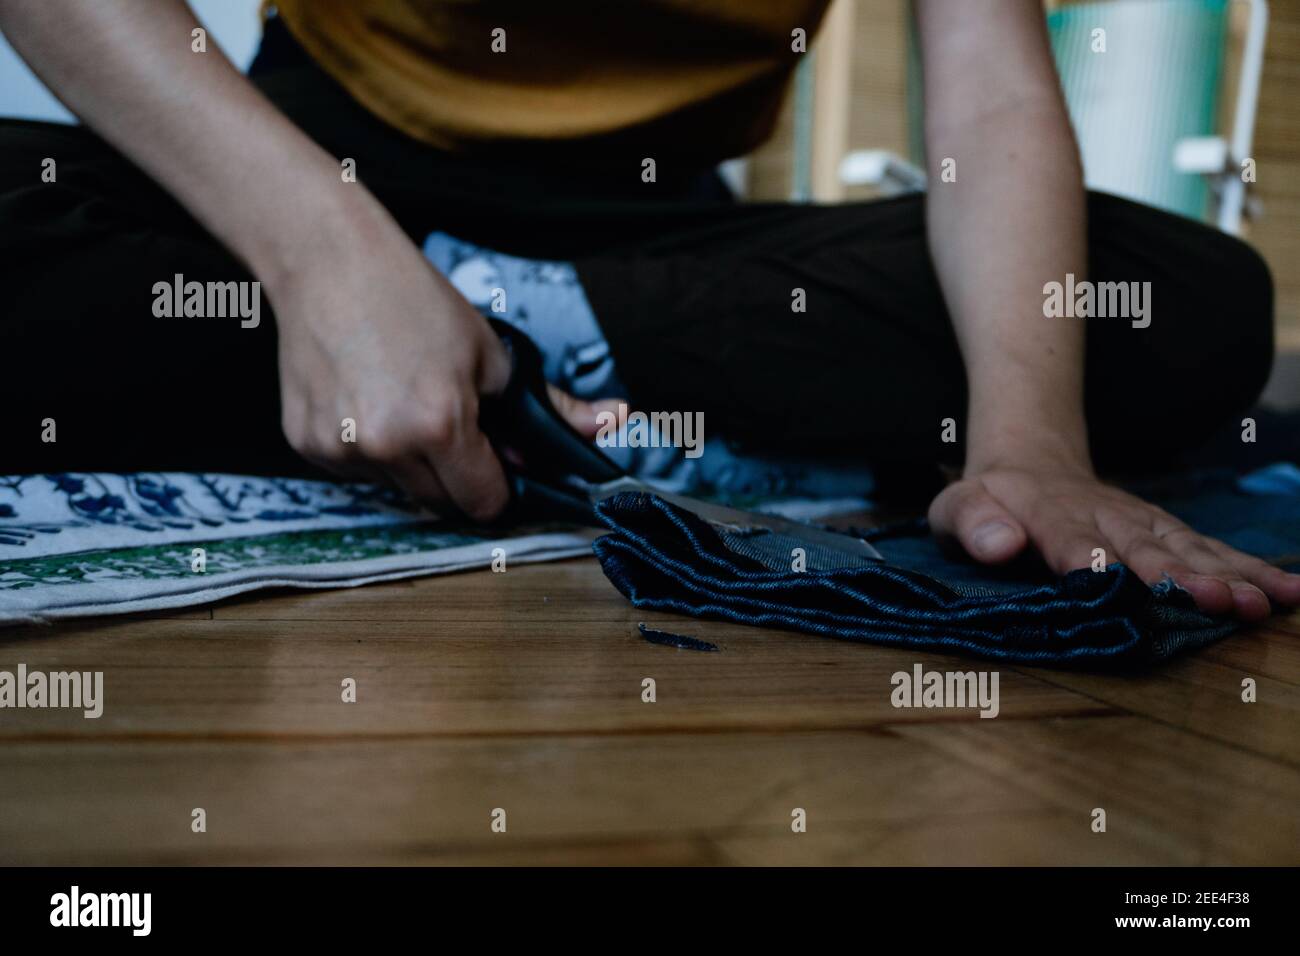 mujer que mendaba pantalones a mano con un par de tijeras, espíritu empresarial, trabajador explotado Foto de stock